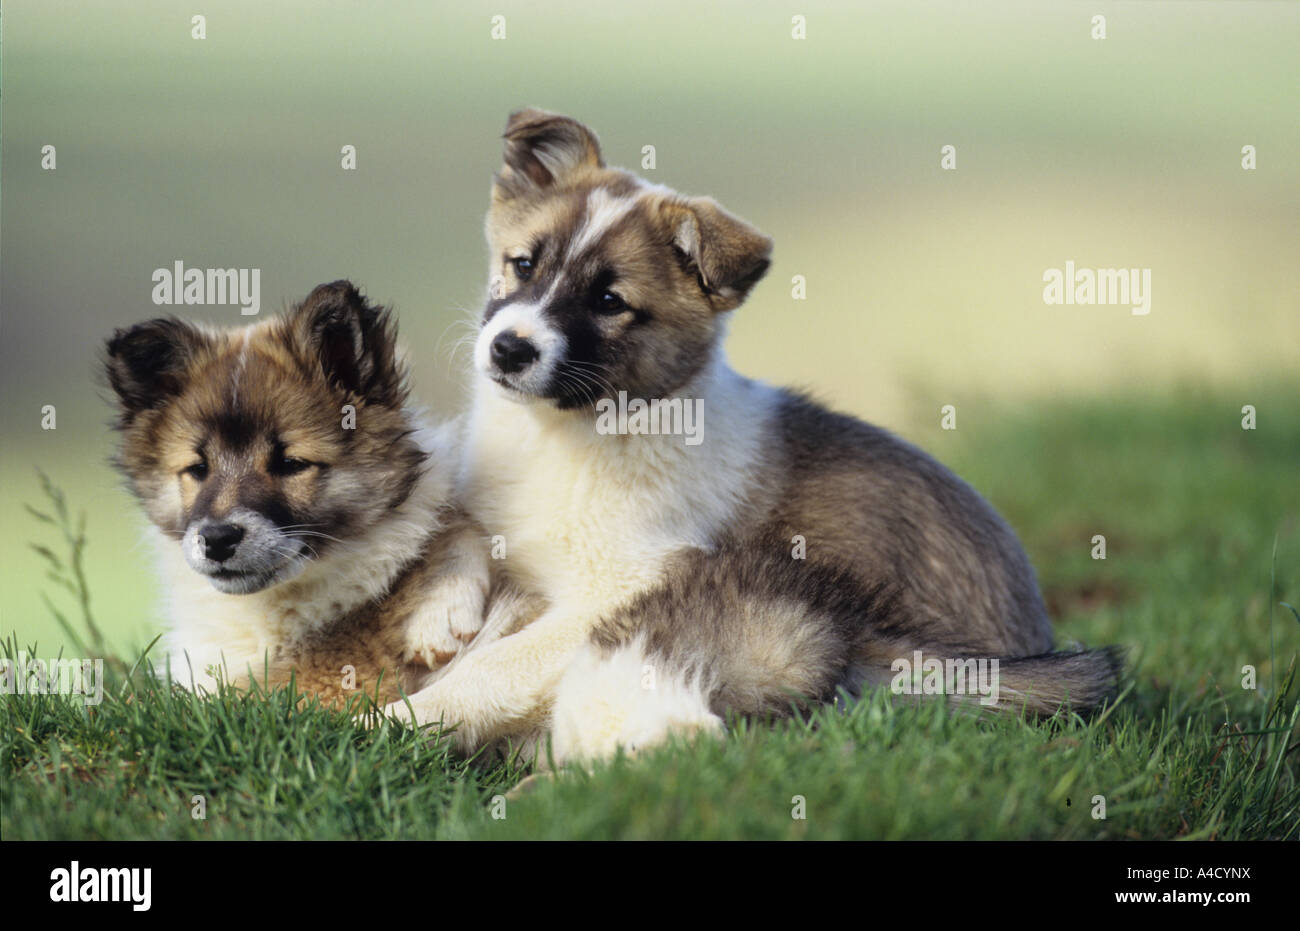 Isländische Hund Isländisch, Schäferhund (Canis Lupus Familiaris), zwei  Welpen auf dem Rasen Stockfotografie - Alamy